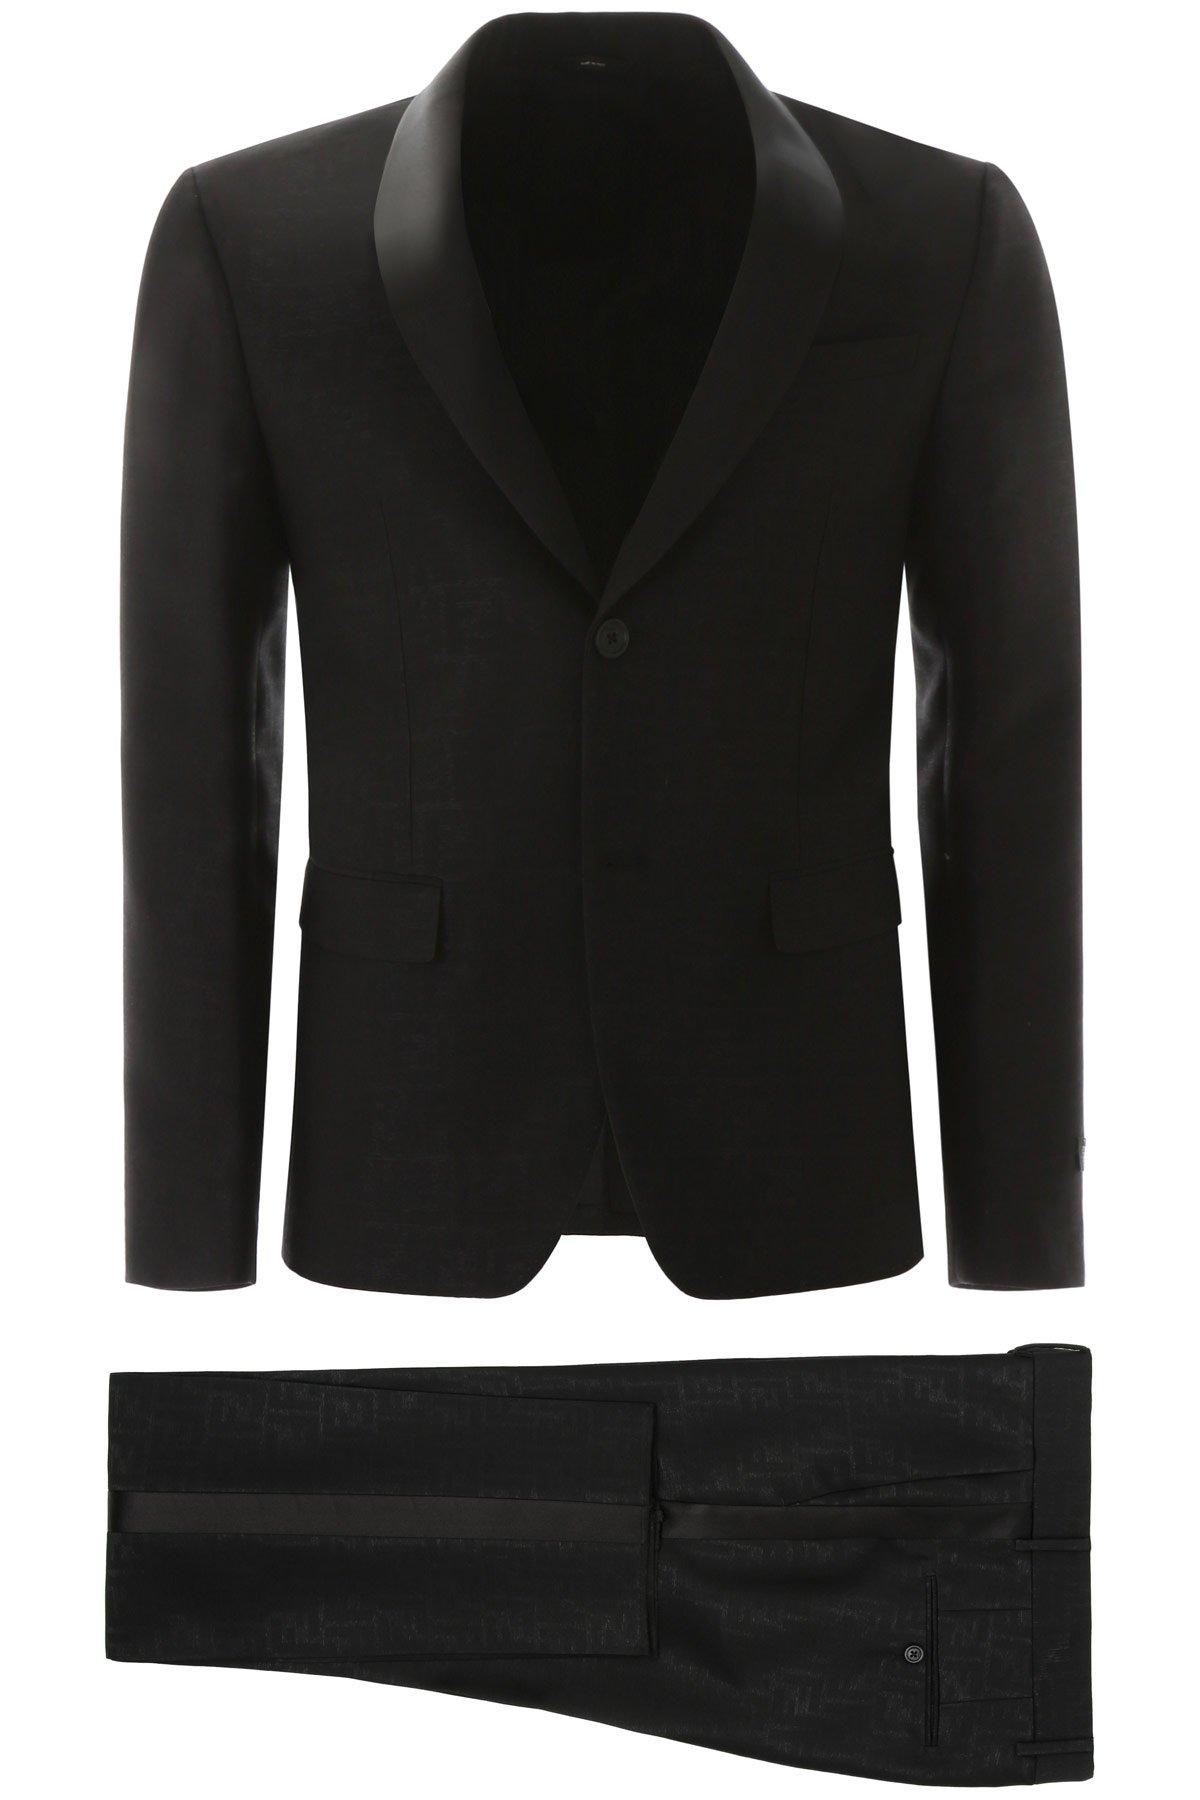 Fendi Wool Ff Printed Suit in Black for Men - Lyst